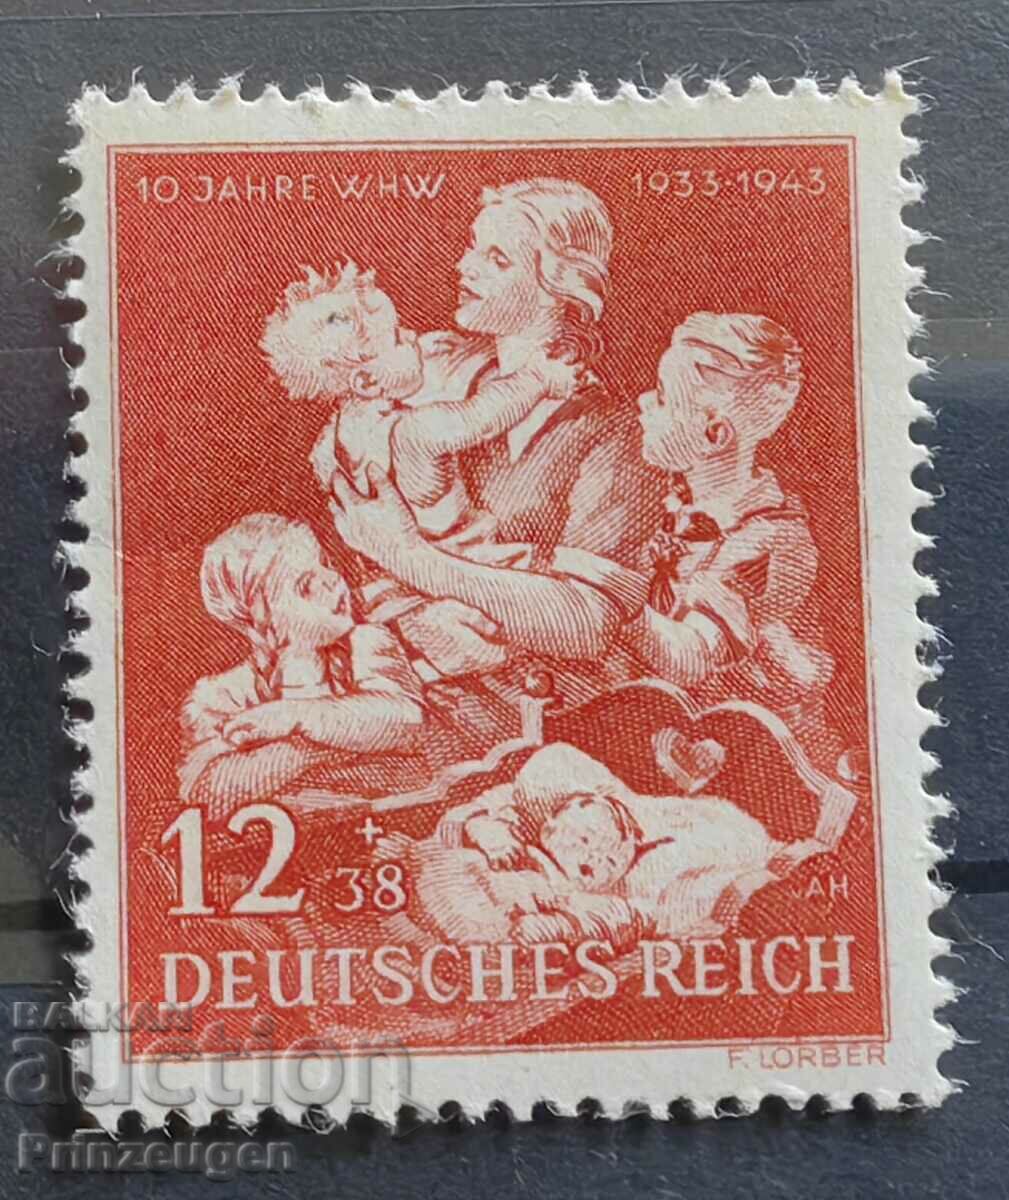 Γερμανία - Τρίτο Ράιχ - 1943 - πλήρης σειρά